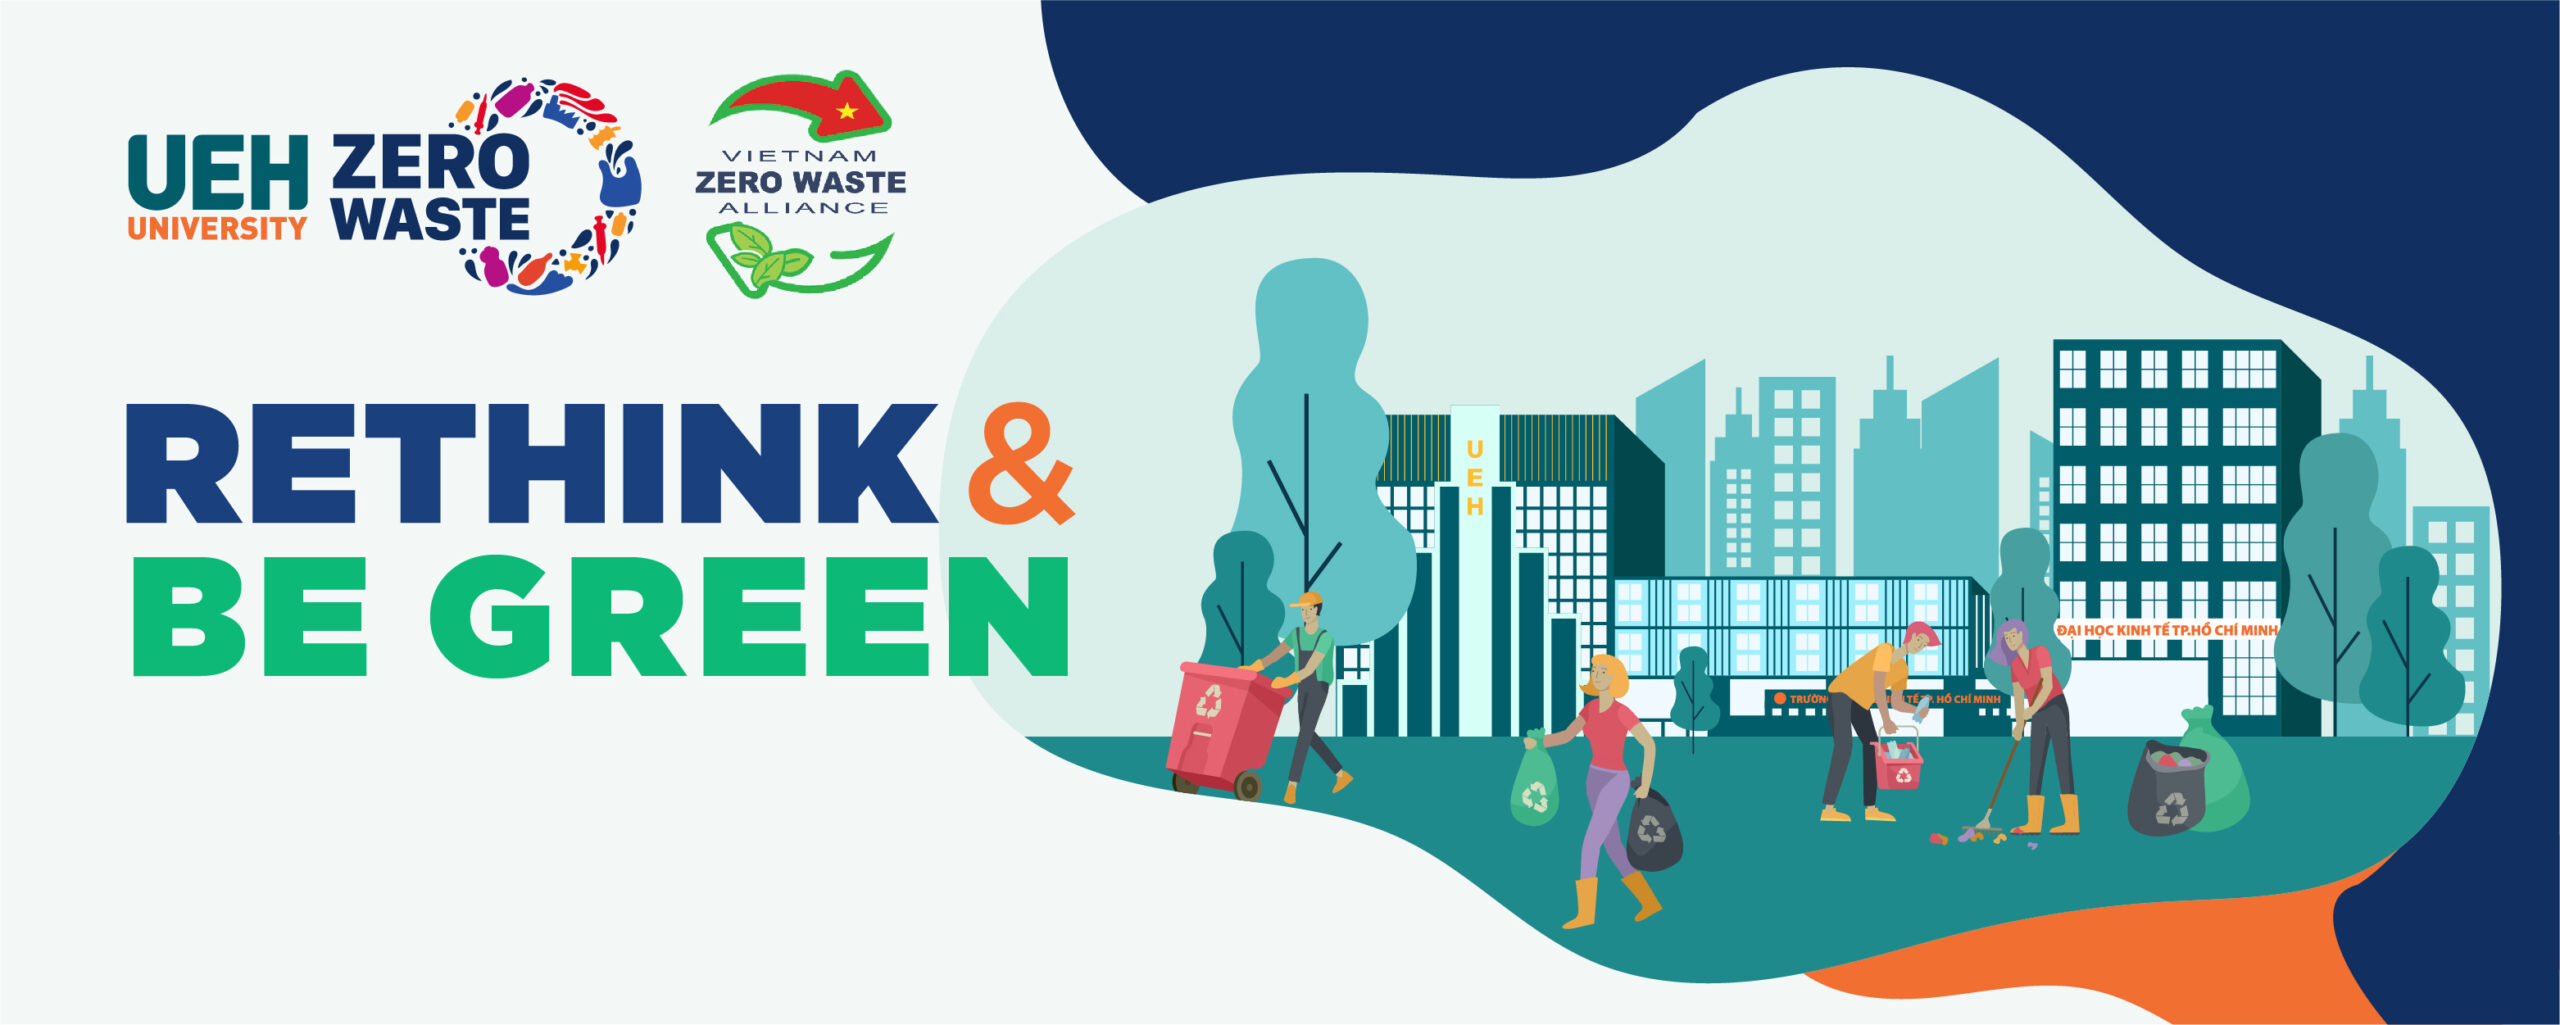 UEH đạt quán quân Cuộc thi quốc tế “Thử thách thành phố không rác” với dự án UEH Zero Waste Campus